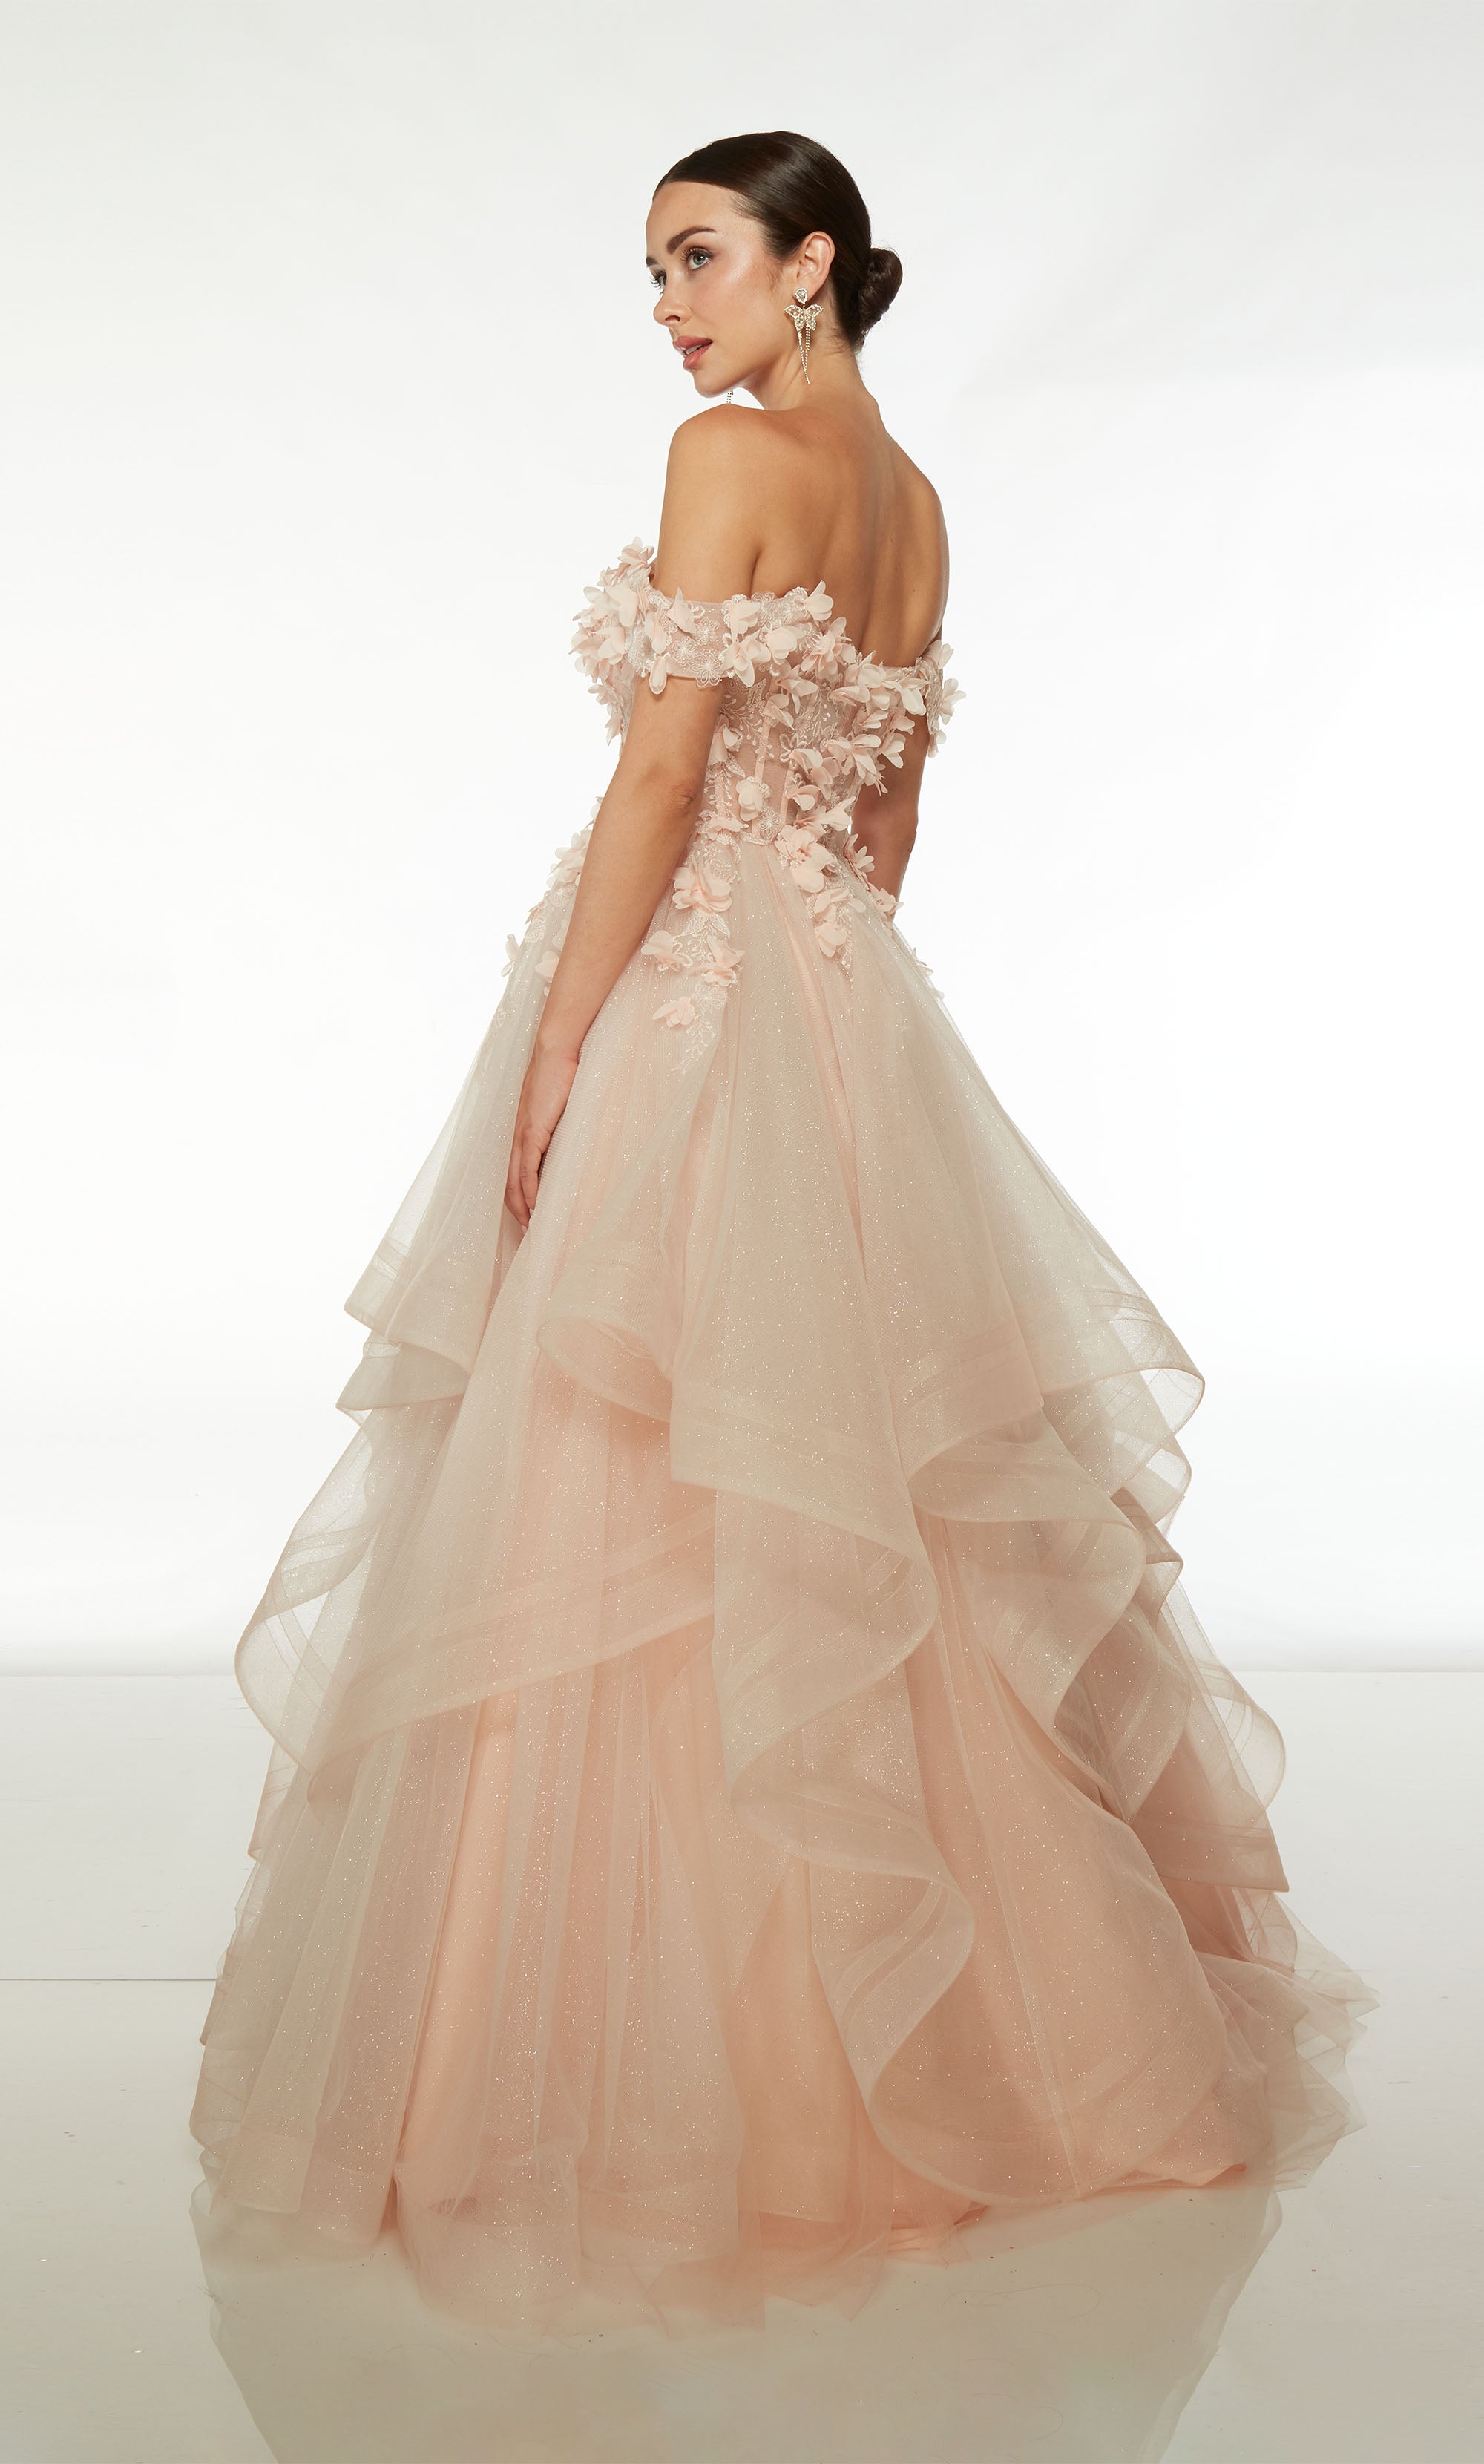 Feminine blush pink and ivory fishtail wedding dress